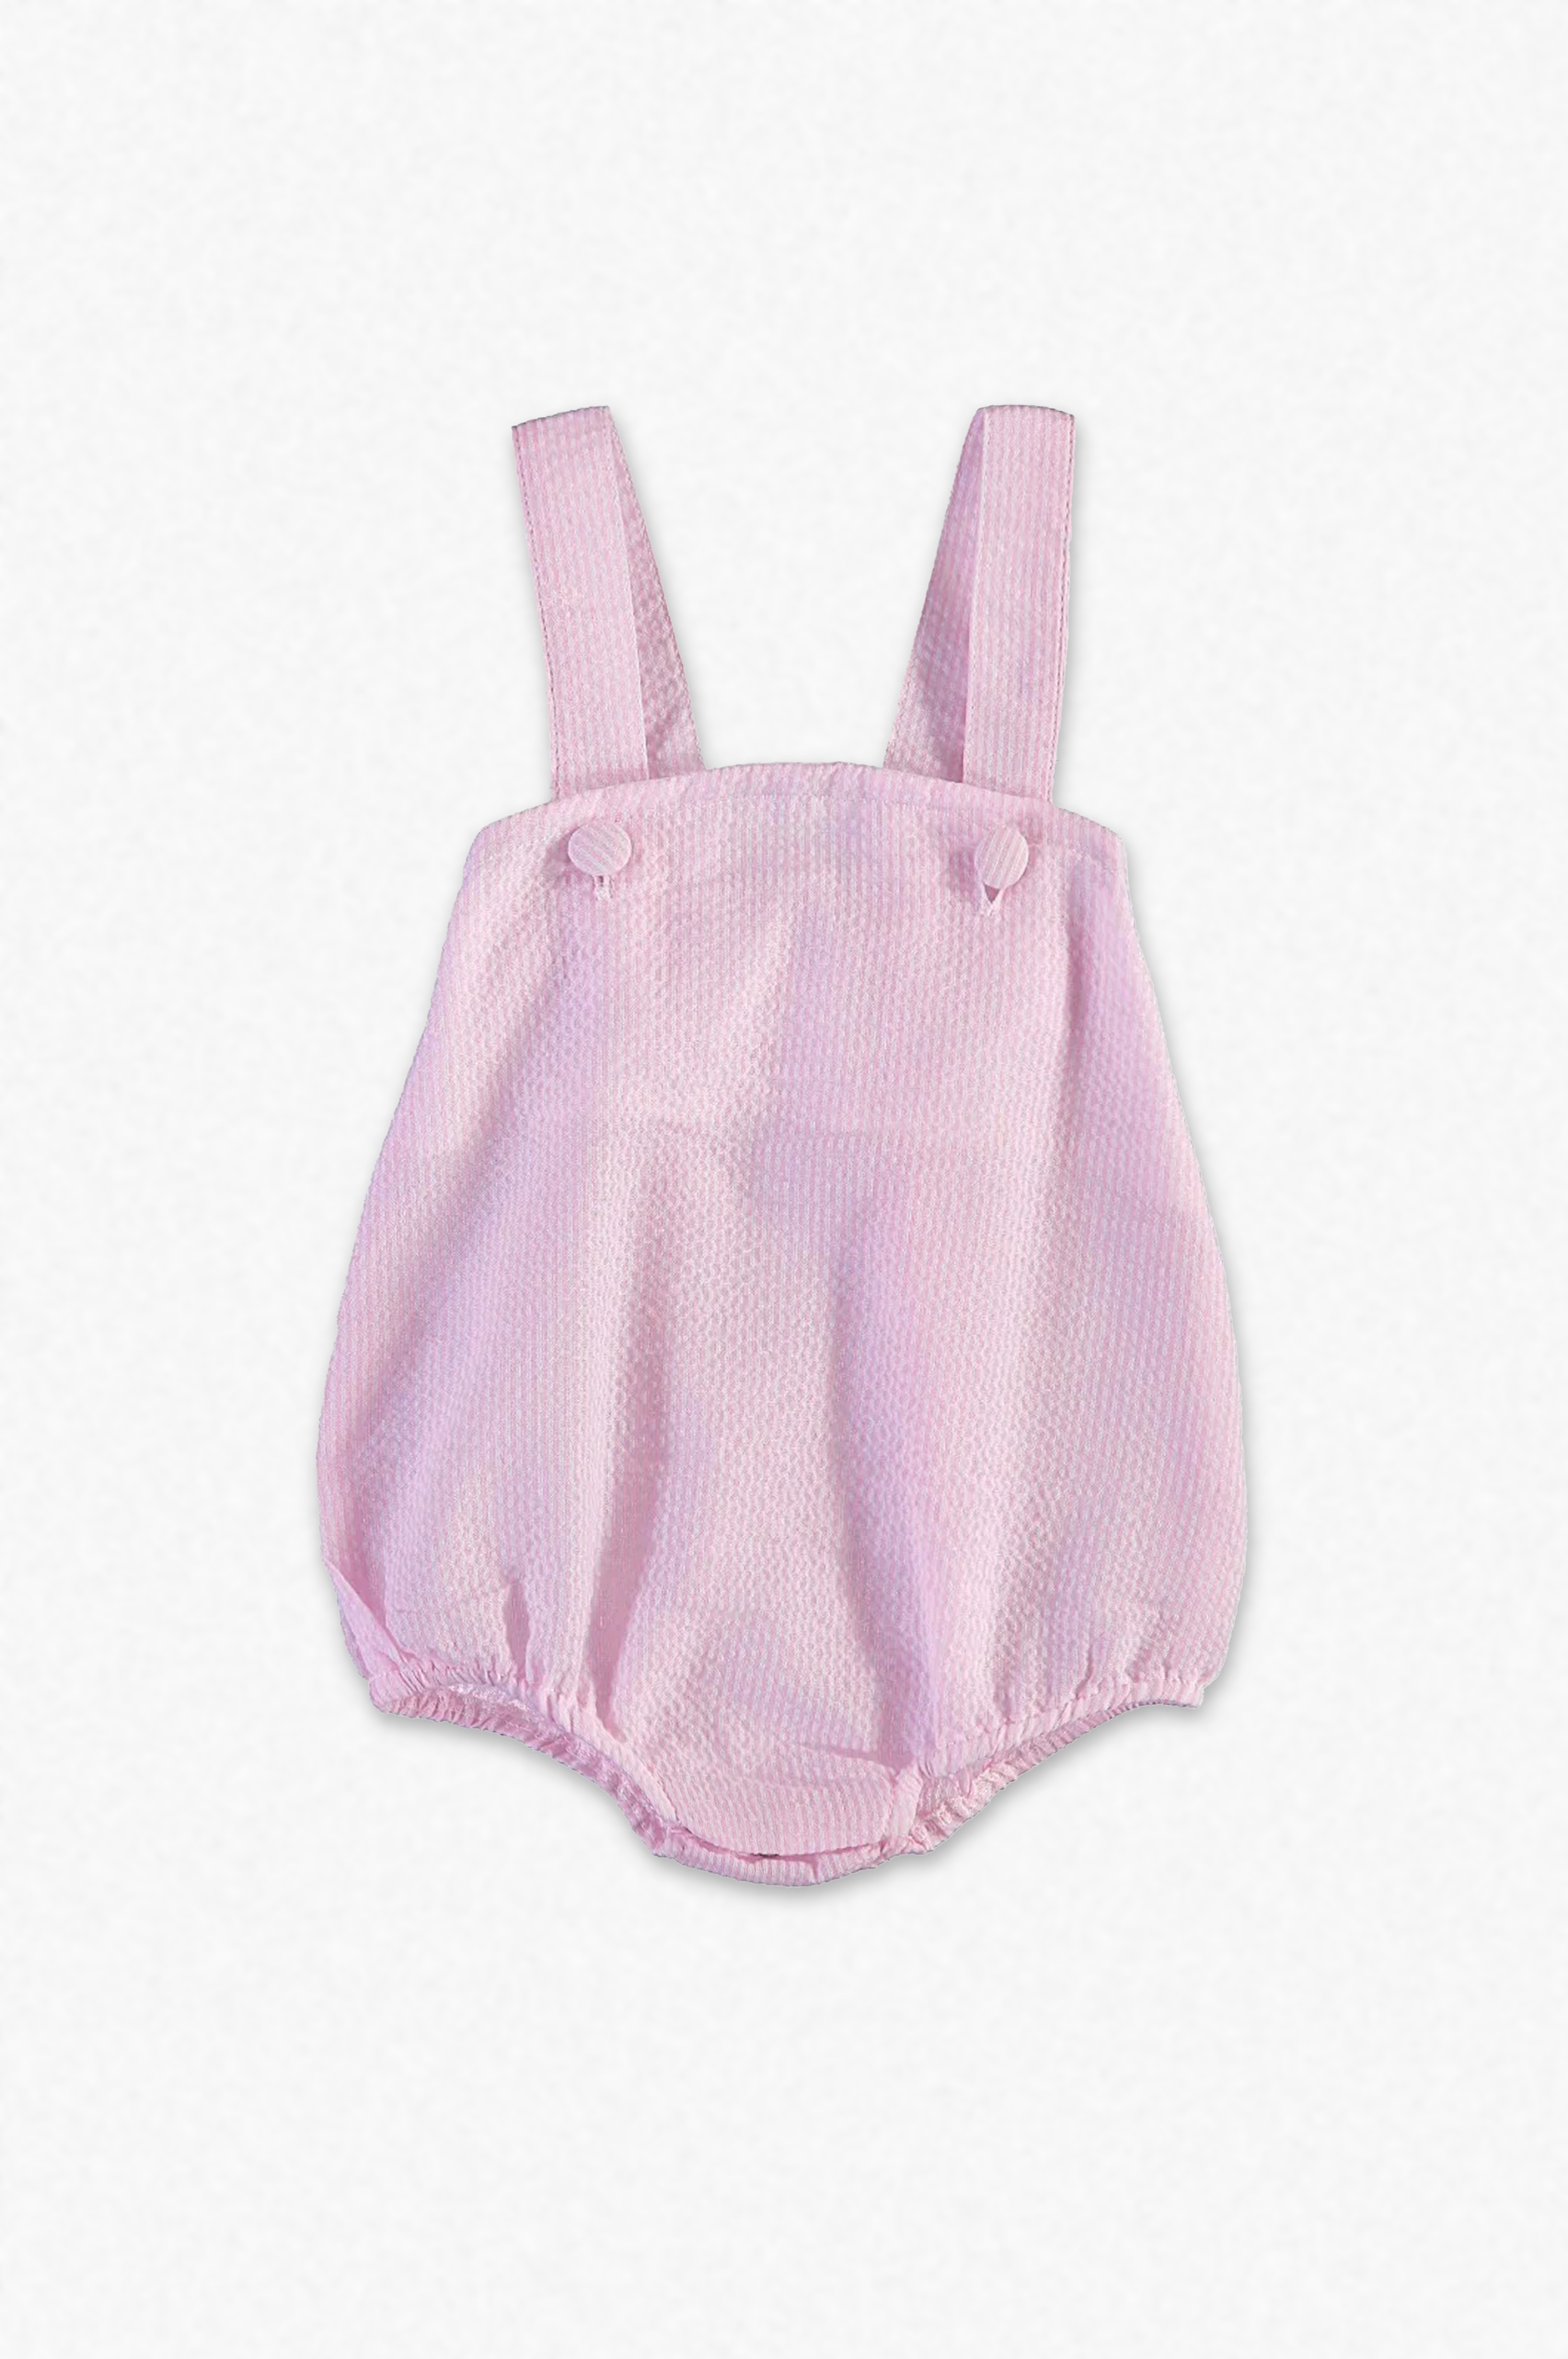 90070-Monogram Seersucker Pink Sunsuit Baby Girl Bubble